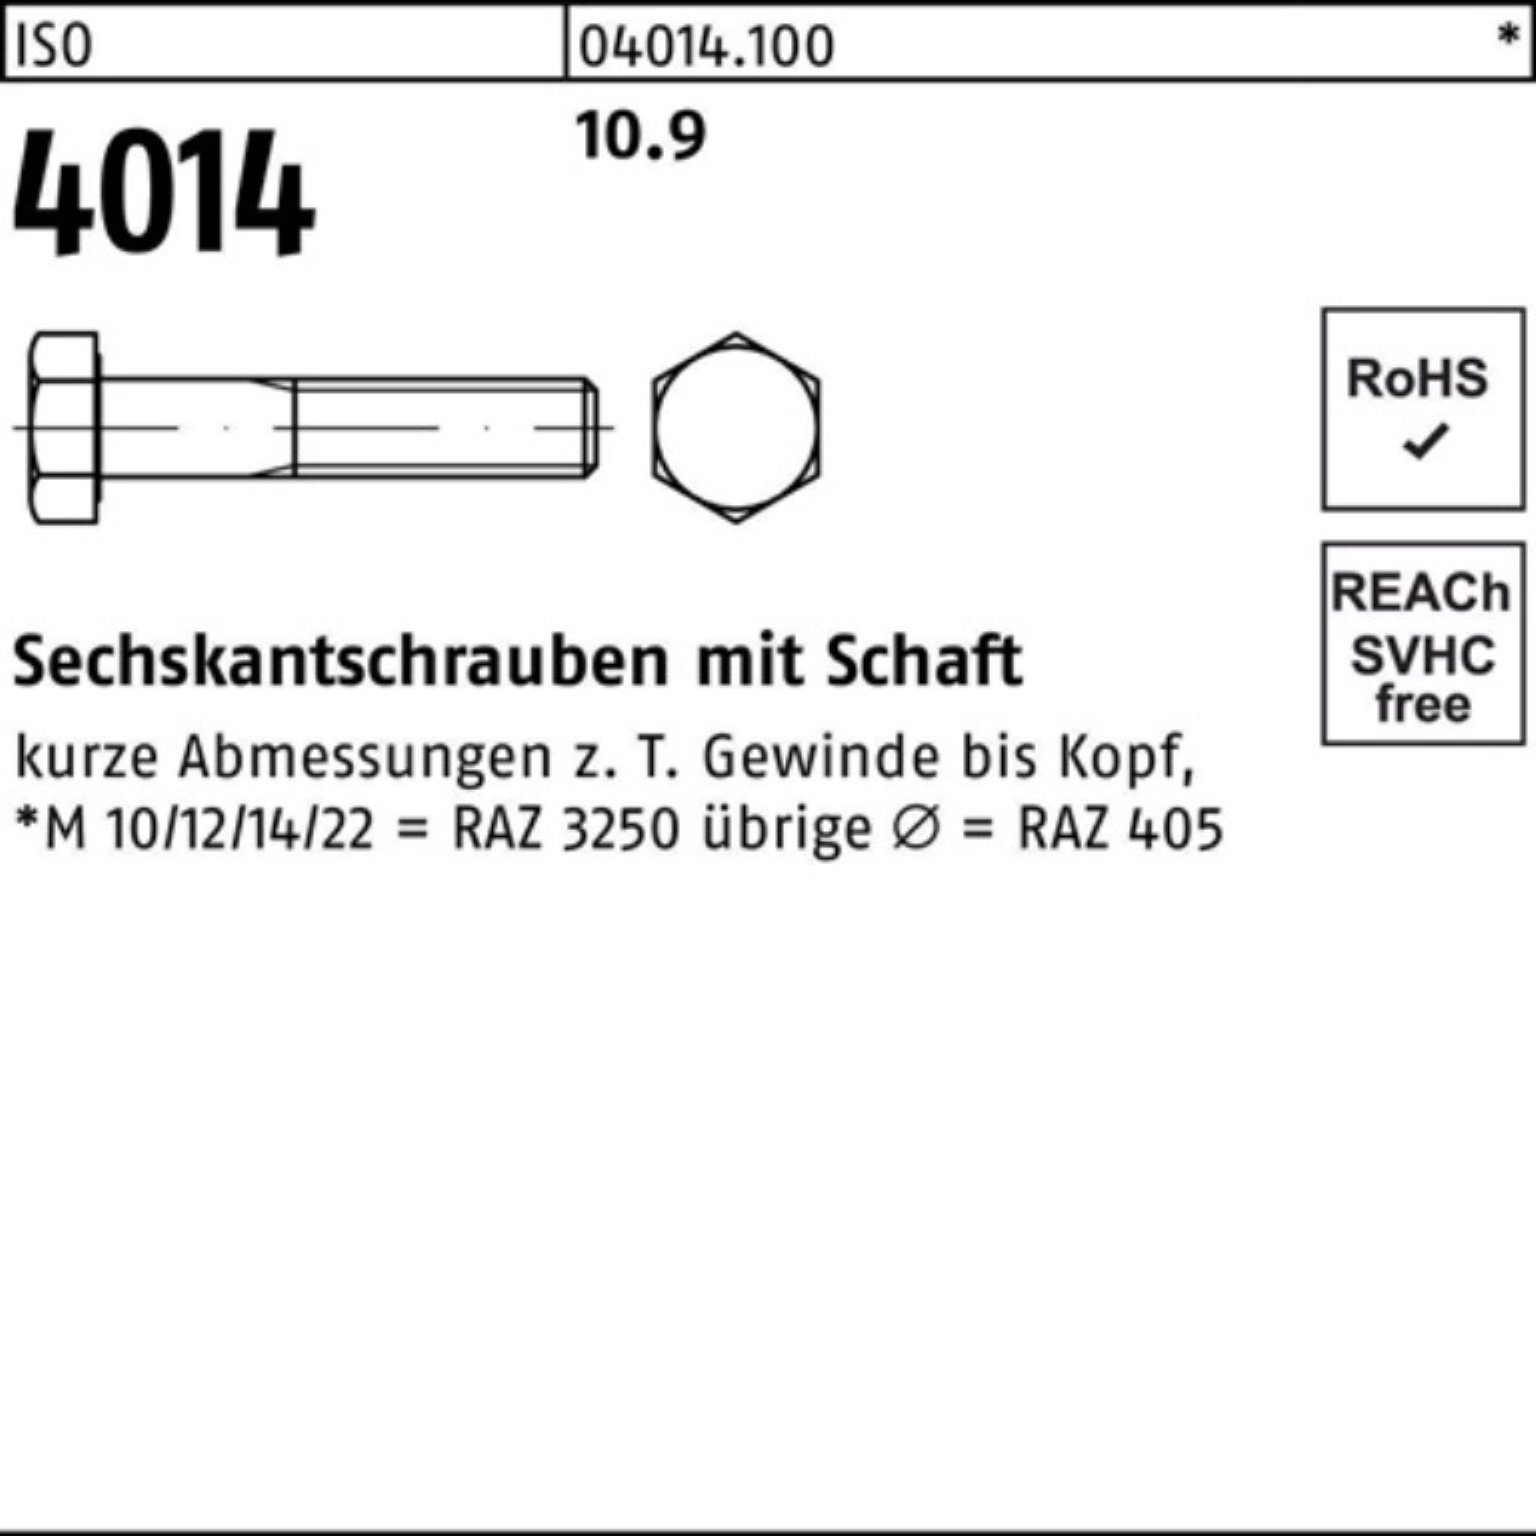 Bufab Sechskantschraube 100er Pack Sechskantschraube 10.9 100 Stück M8x 90 IS 4014 ISO Schaft